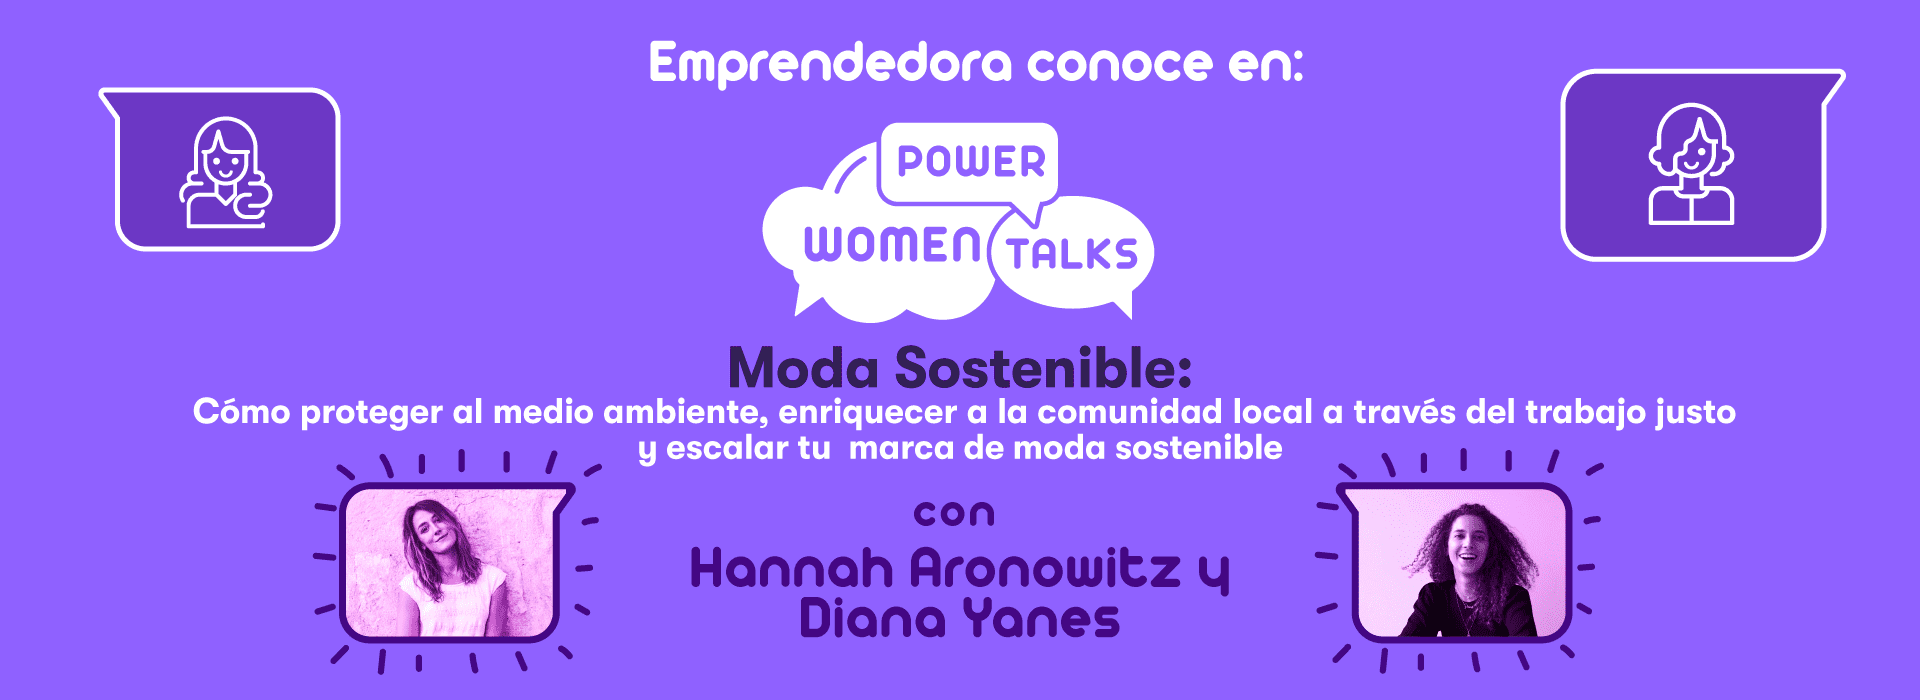 Llega Women Power Talks para empoderar a las mujeres en temas de interés actual y global